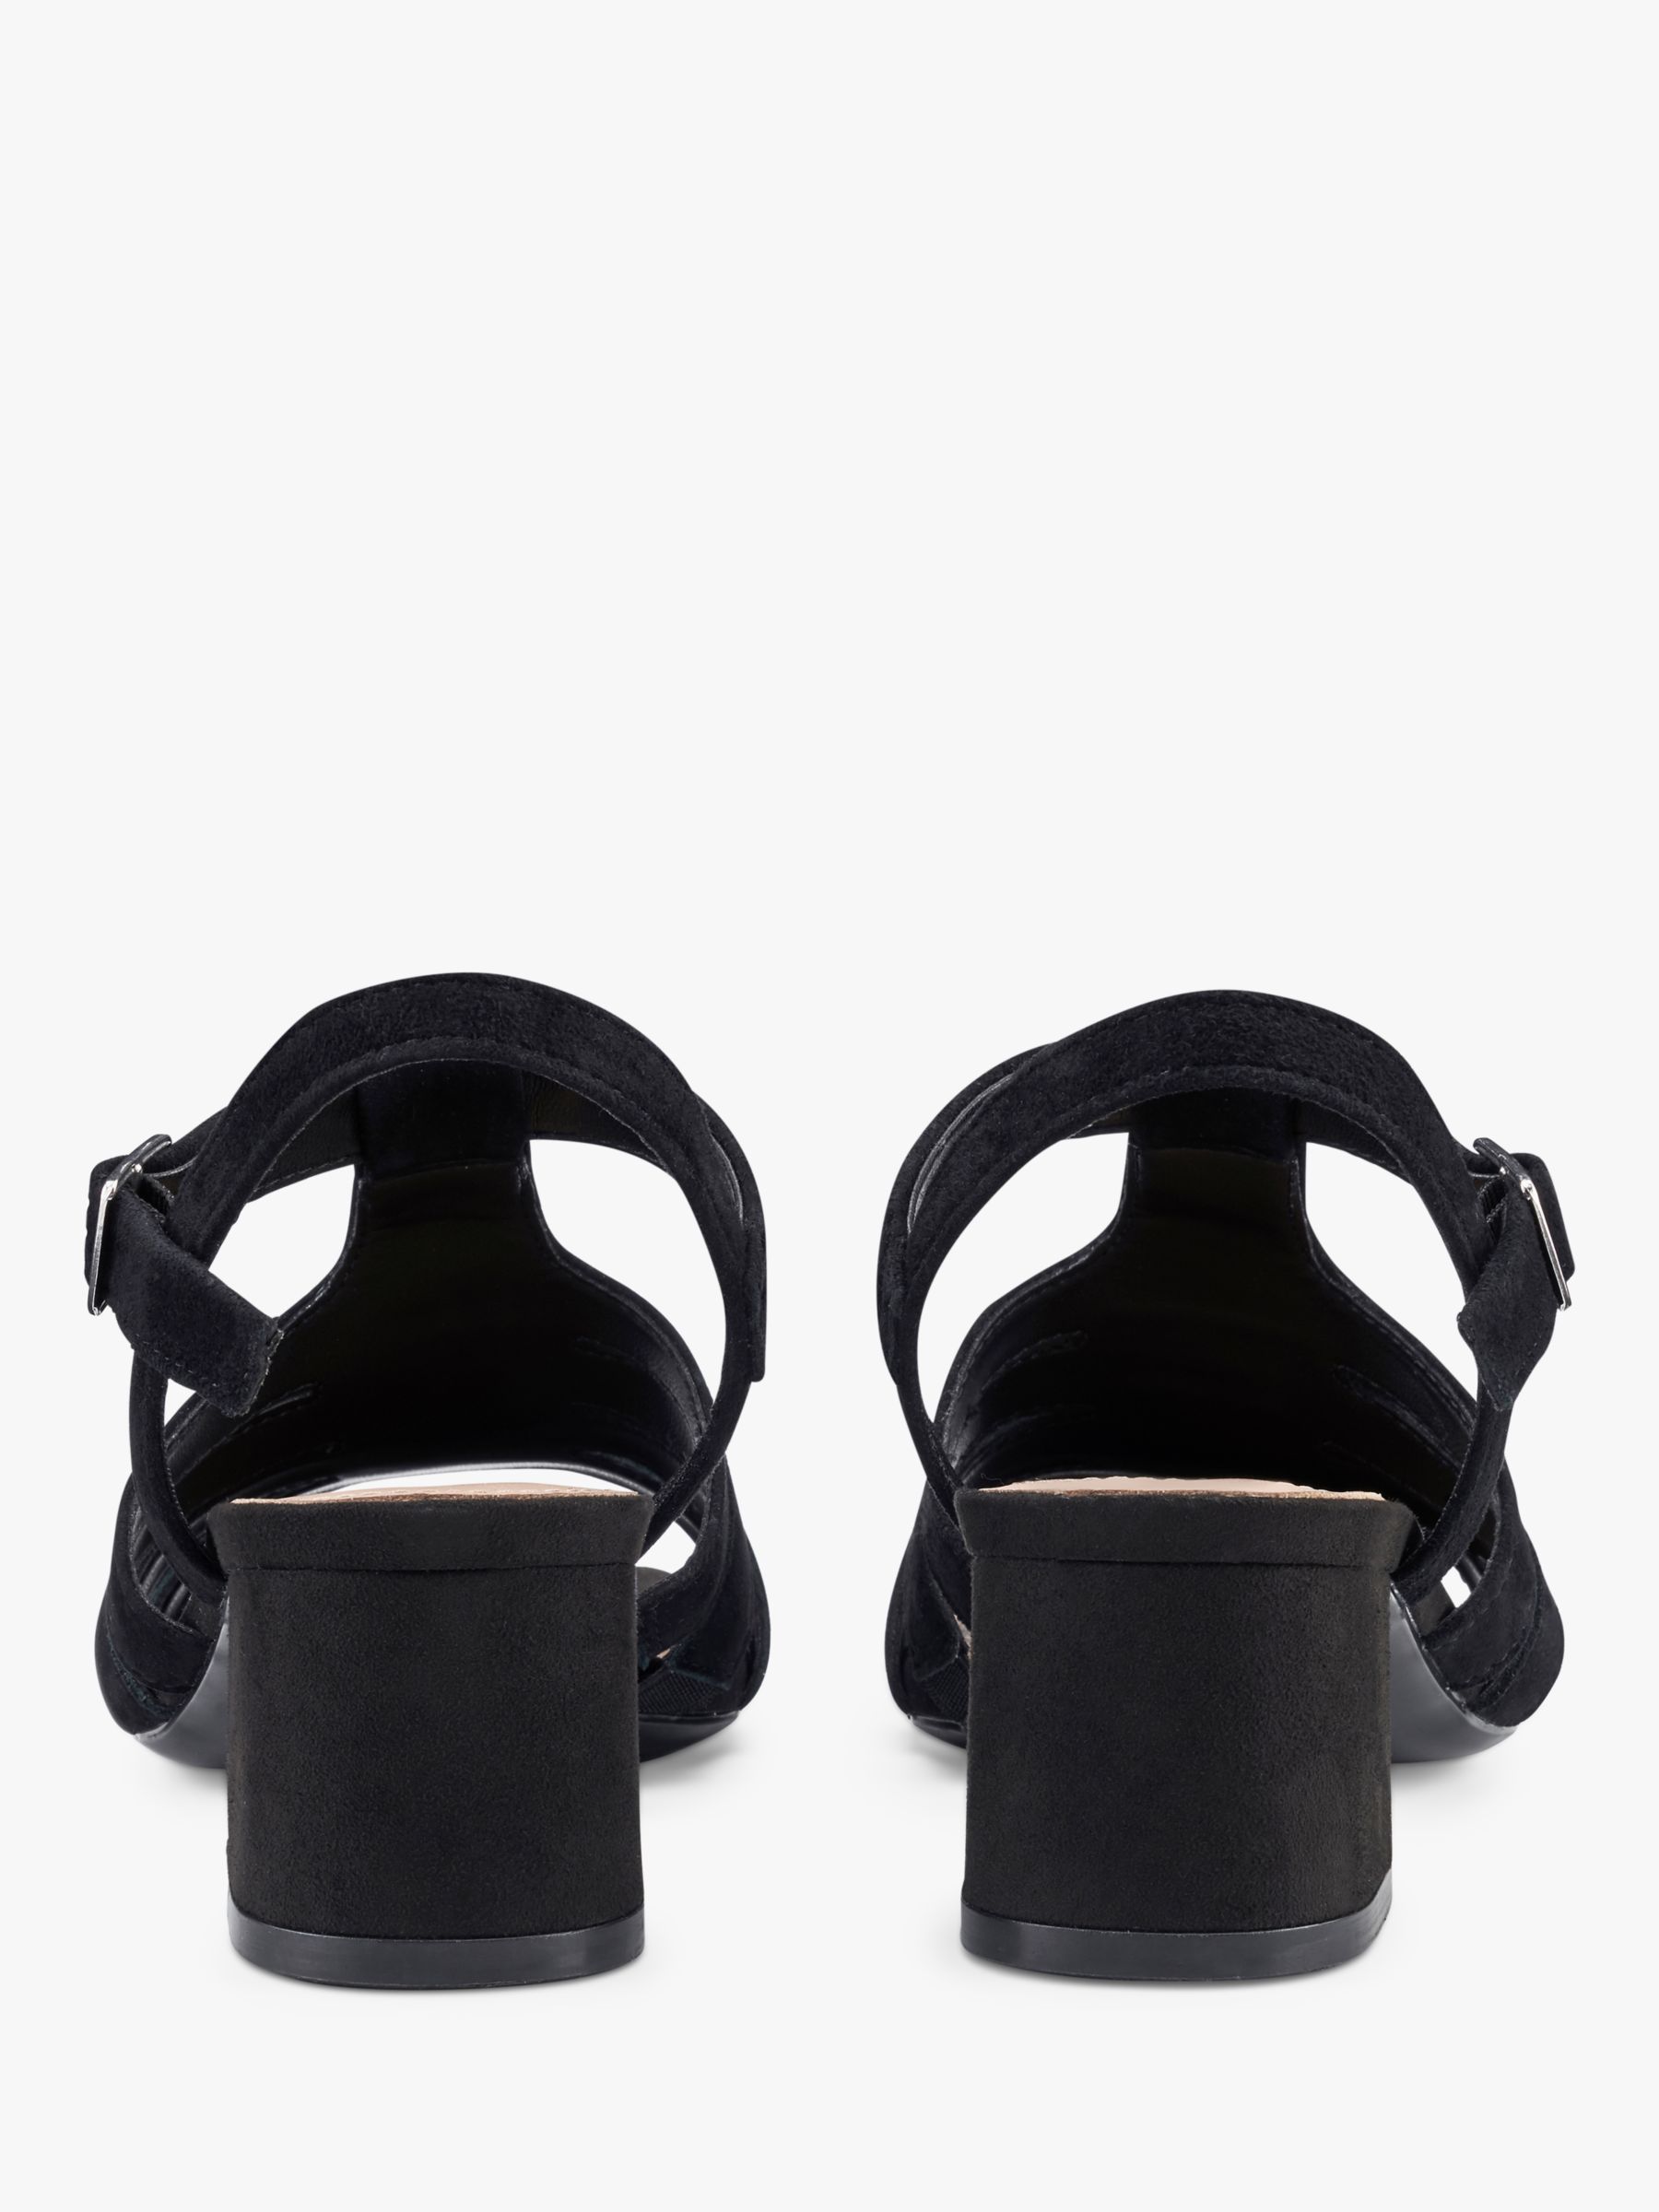 Buy Hotter Portofino Block Heel Suede Sandals, Black Online at johnlewis.com